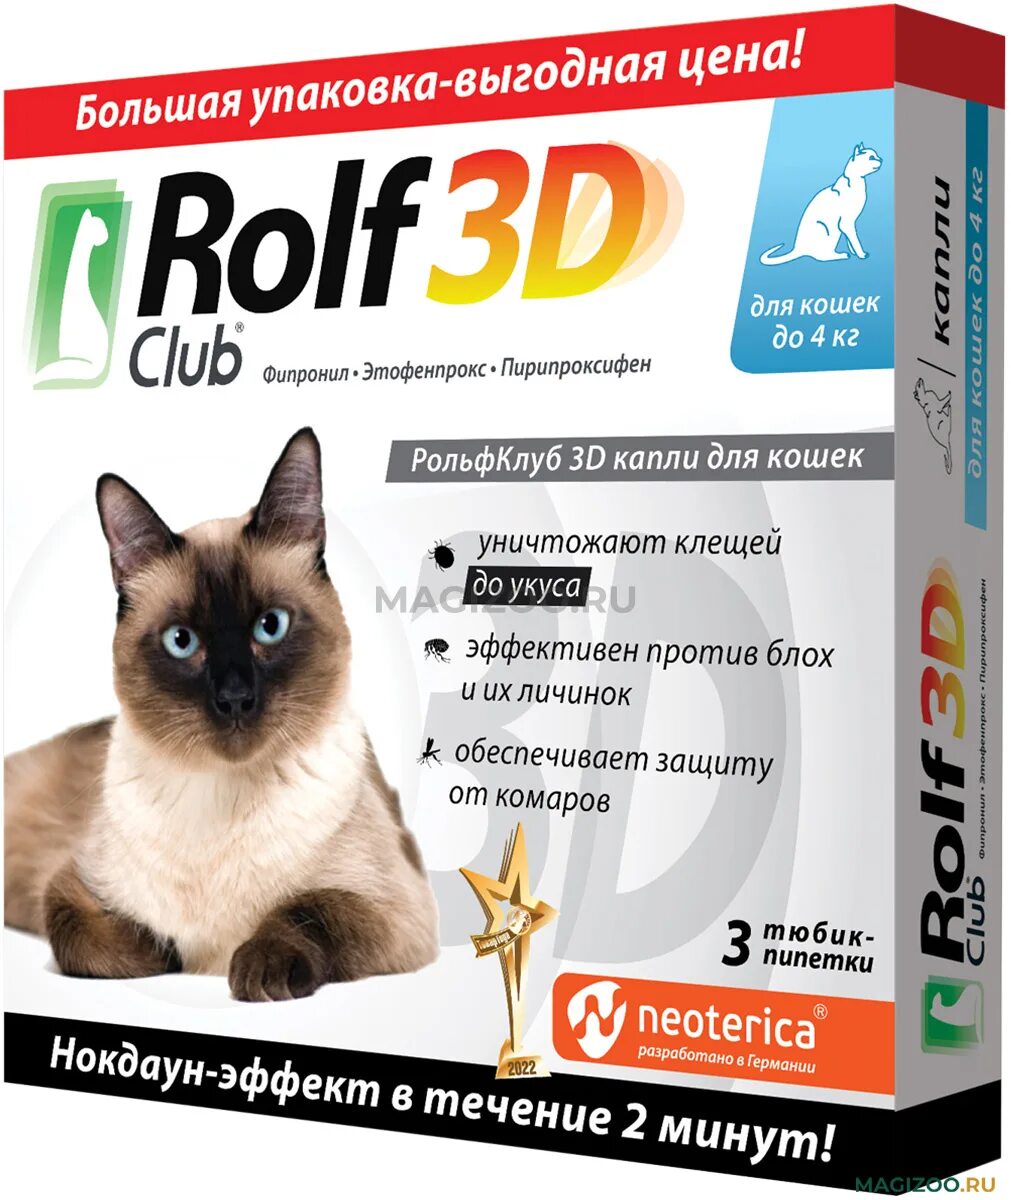 Rolf Club 3d капли для собак 20-40 кг, арт. R405. РОЛЬФ 3д капли для кошек. Капли от блох Rolf 3d. РОЛЬФ клаб для кошек. Рольф 3д капли для собак отзывы